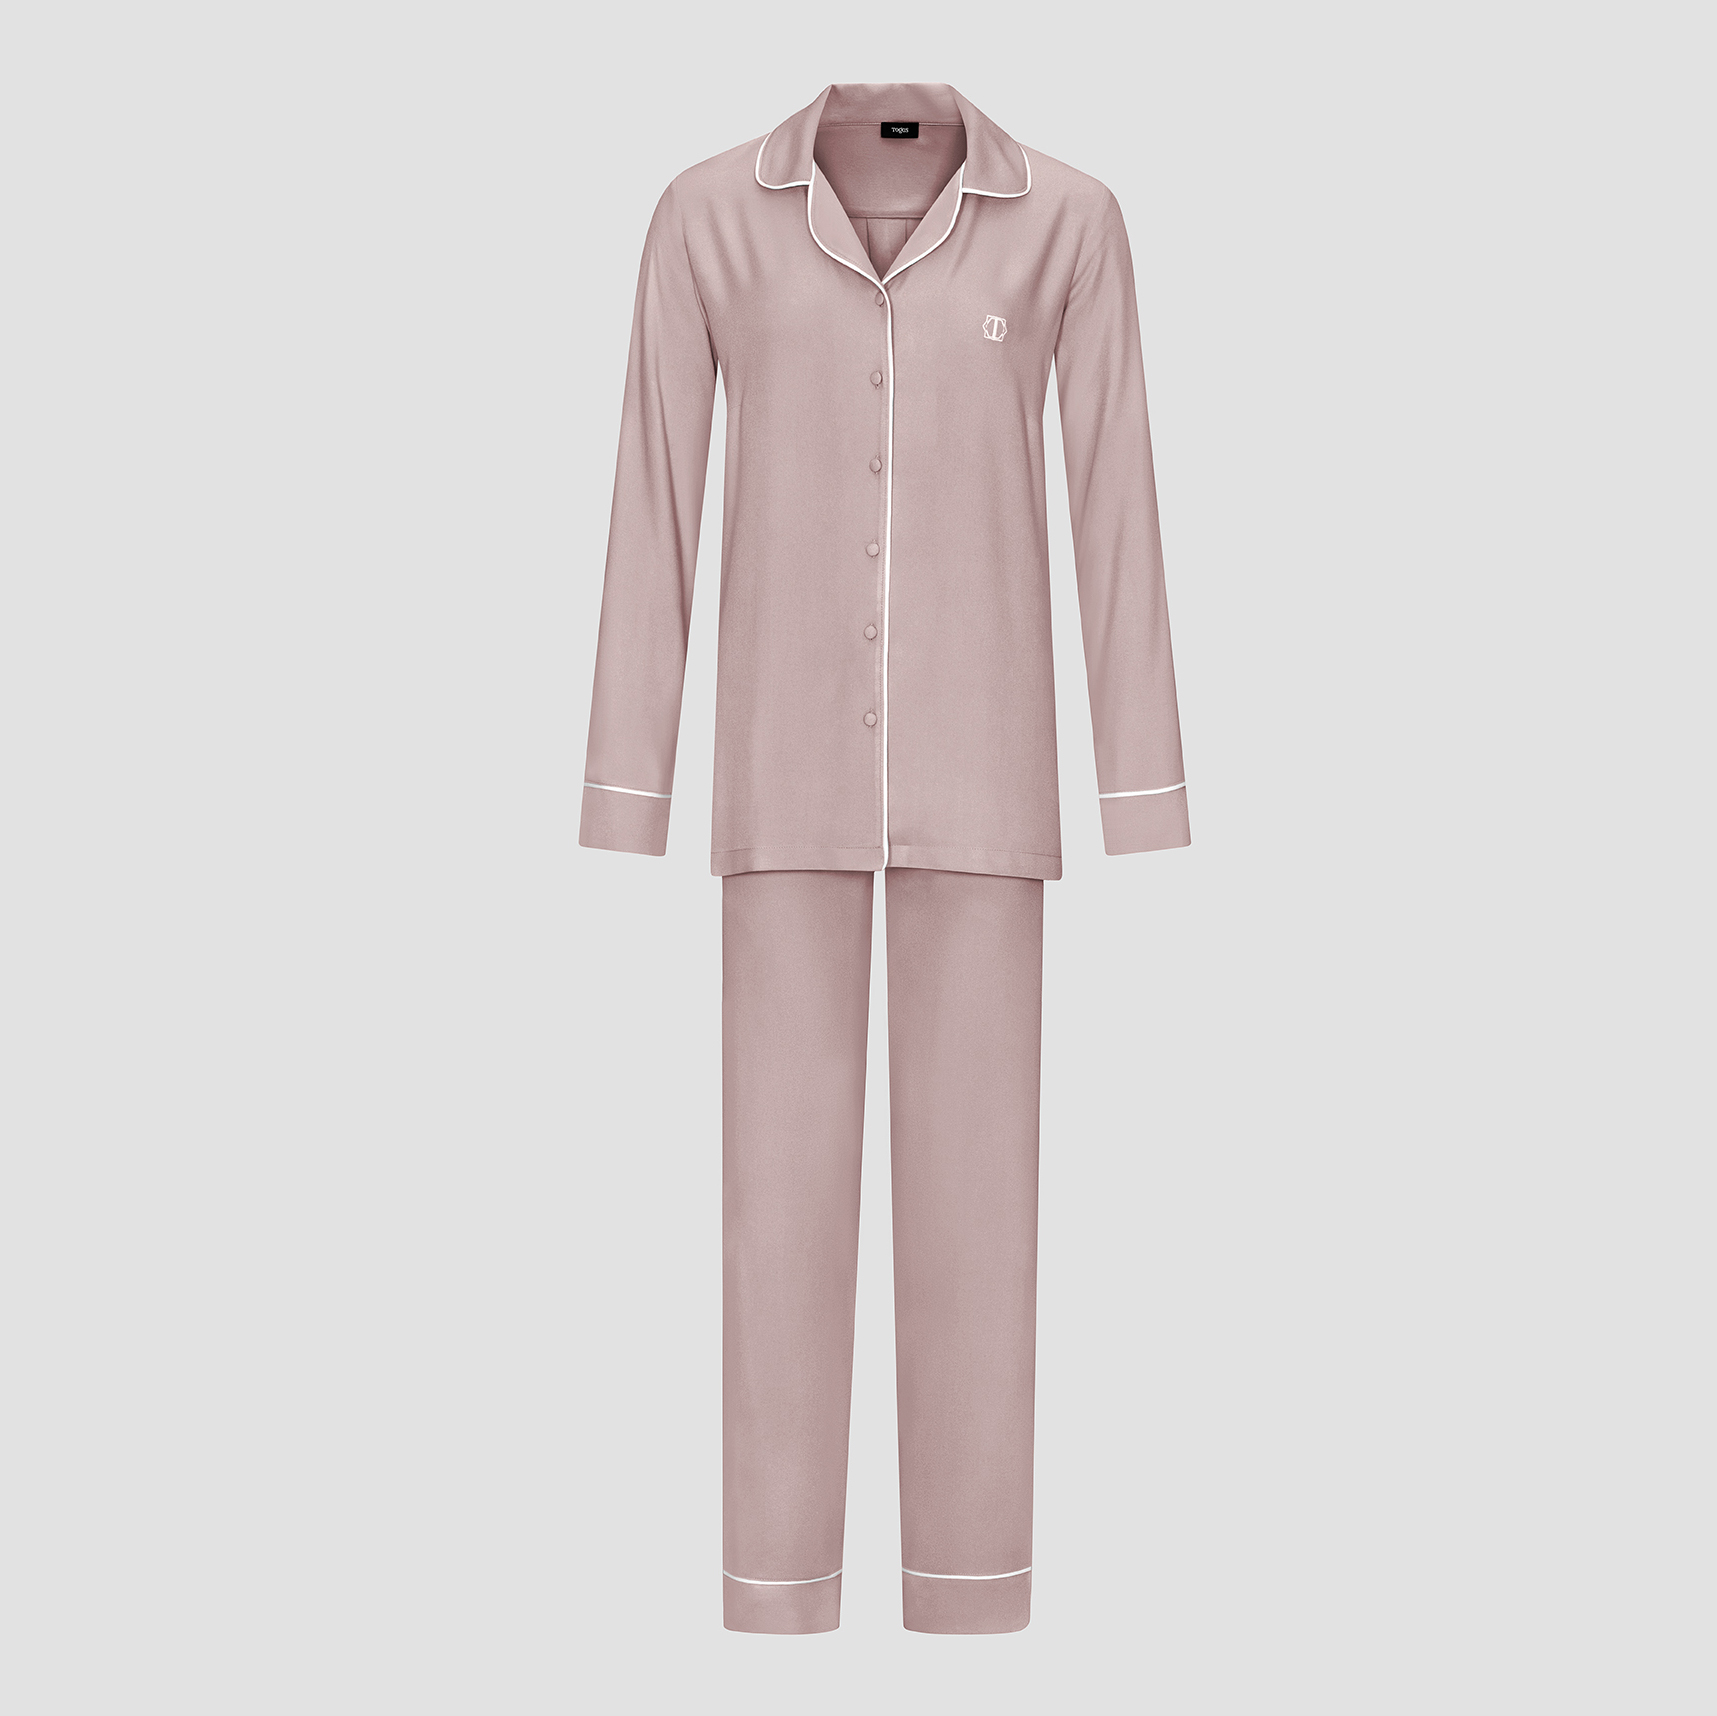 Пижама женская Togas Рамель розовая 2 предмета пижама брюки